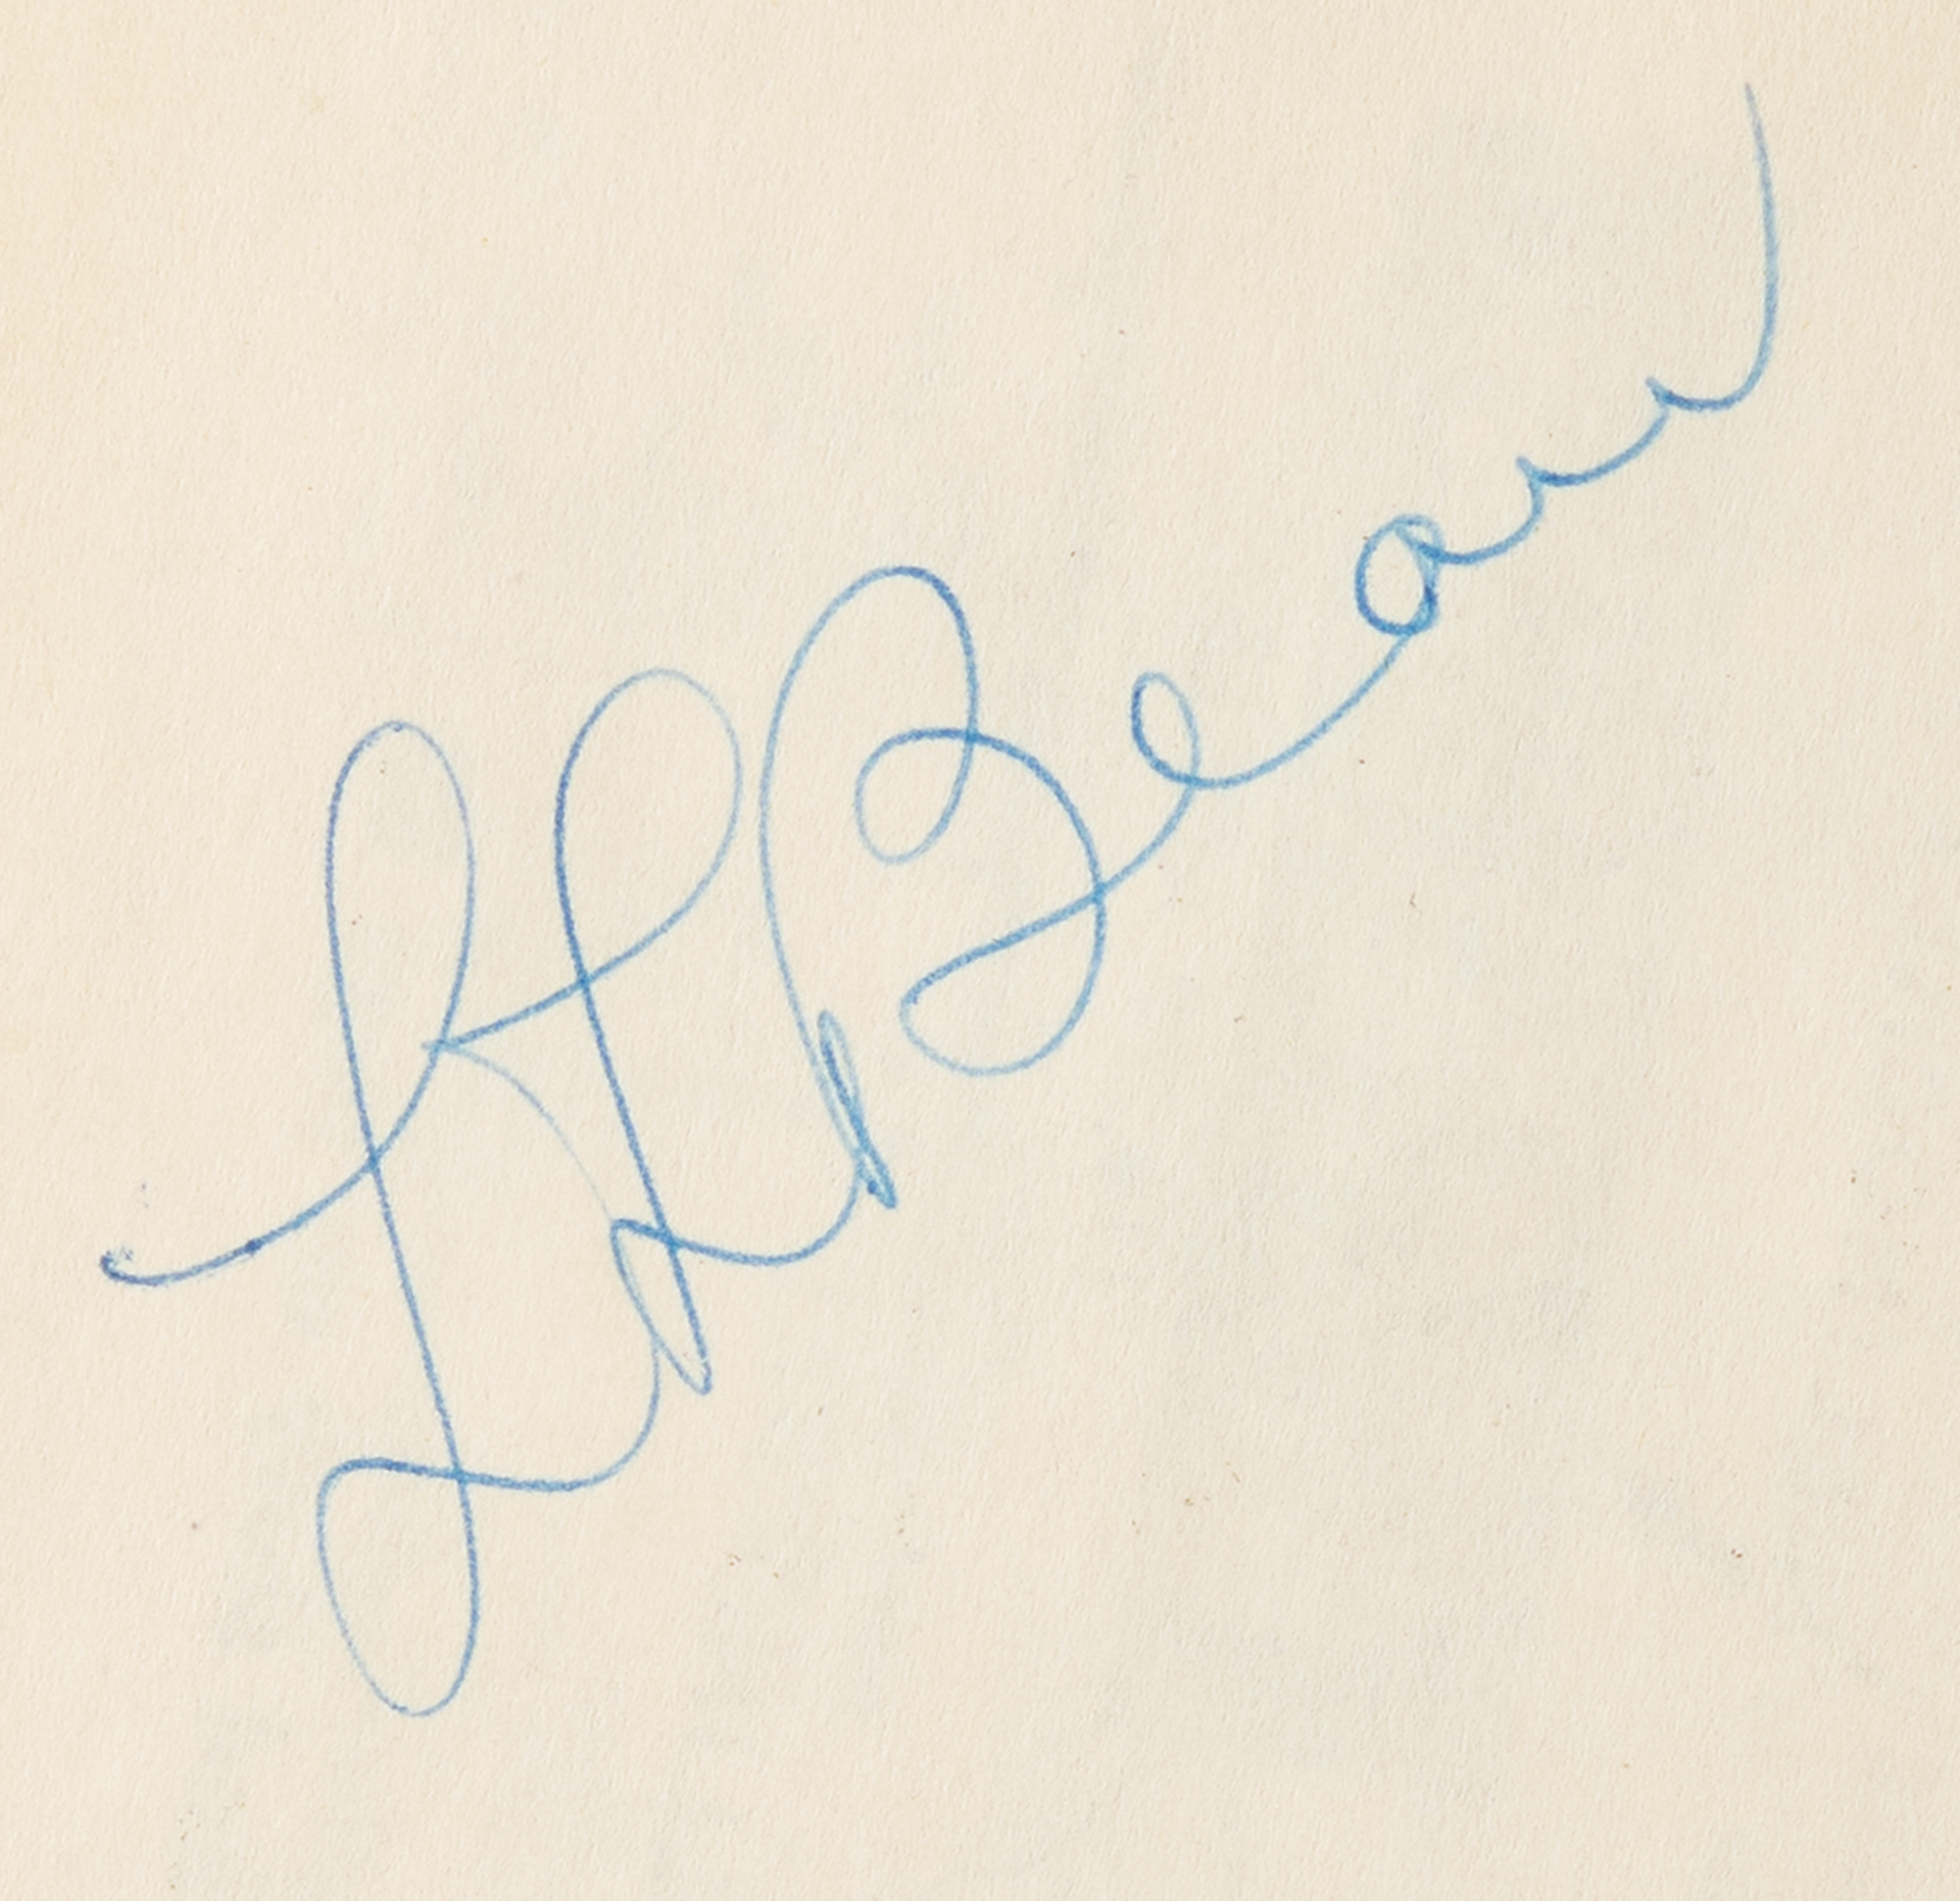 L. L. Bean Signed Book